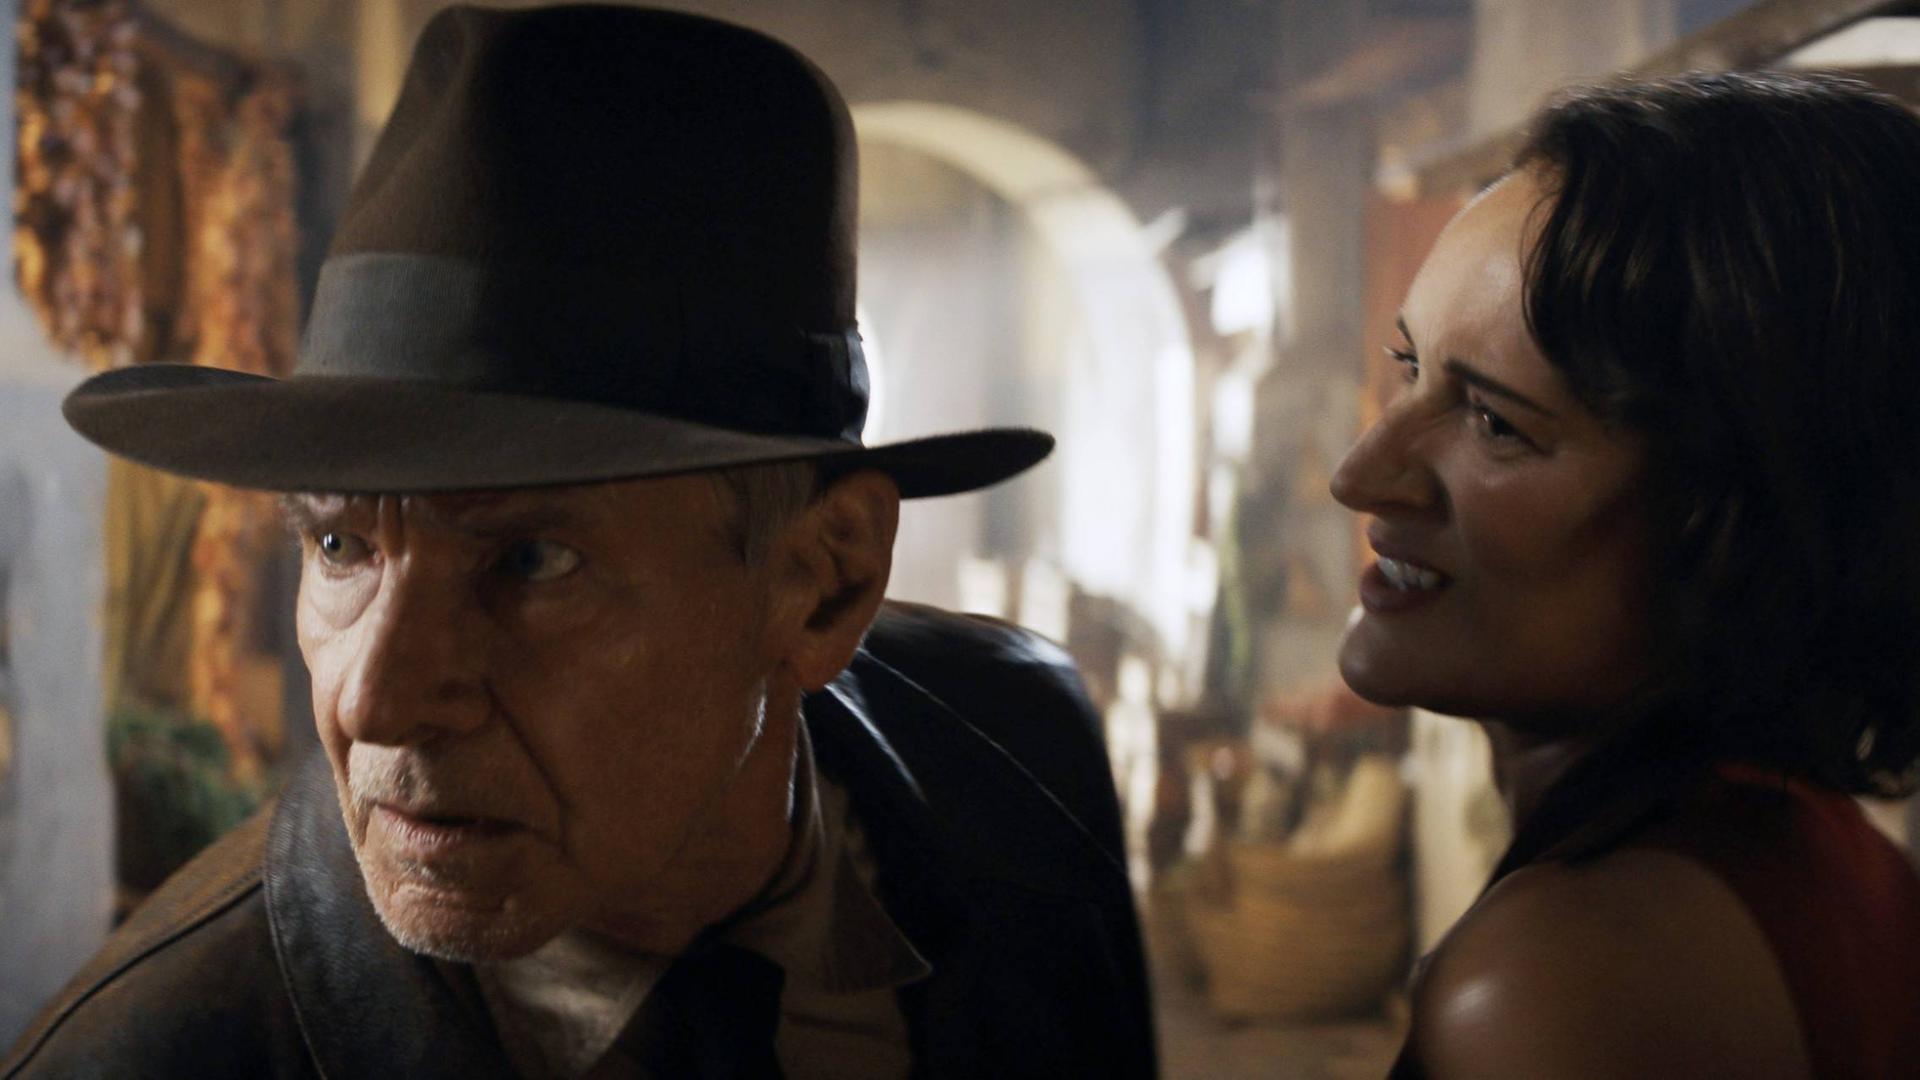 Filmszene aus "Indiana Jones und das Rad des Schicksals": Harrison Ford als Indiana Jones sieht hektisch um sich, Phoebe Waller-Bridge als Helena Shaw steht neben ihm.